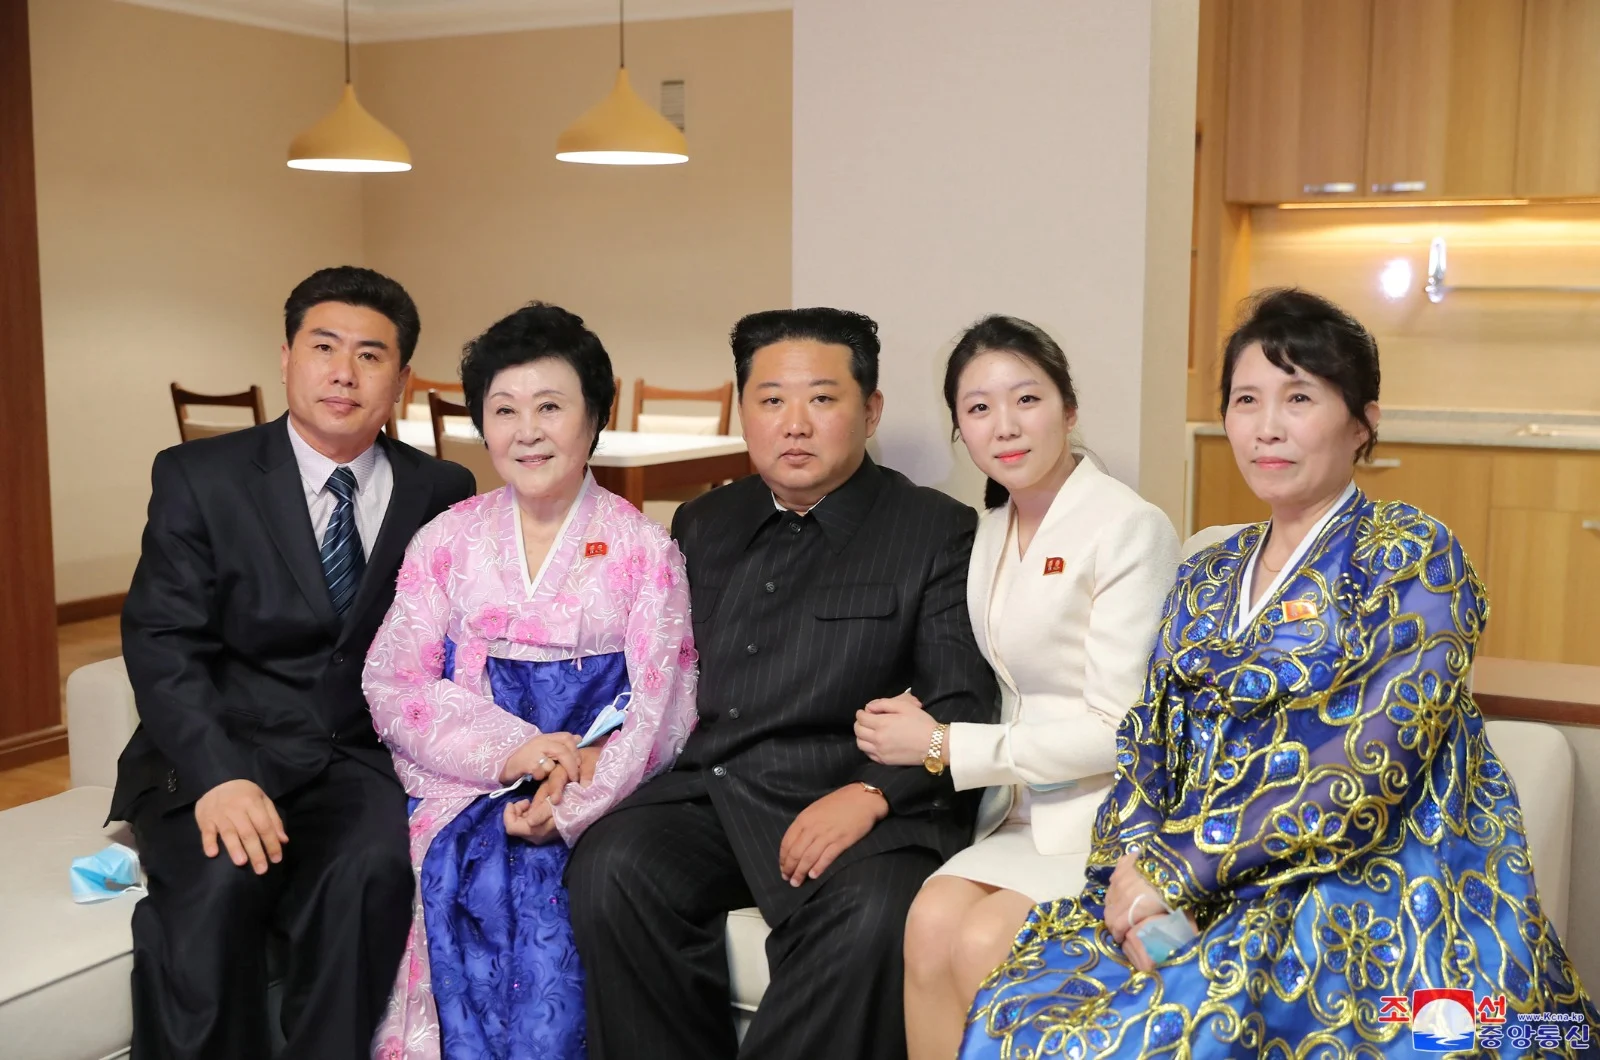 קים ג'ונג און עם מגישת החדשות ומשפחתה בביתם החדש